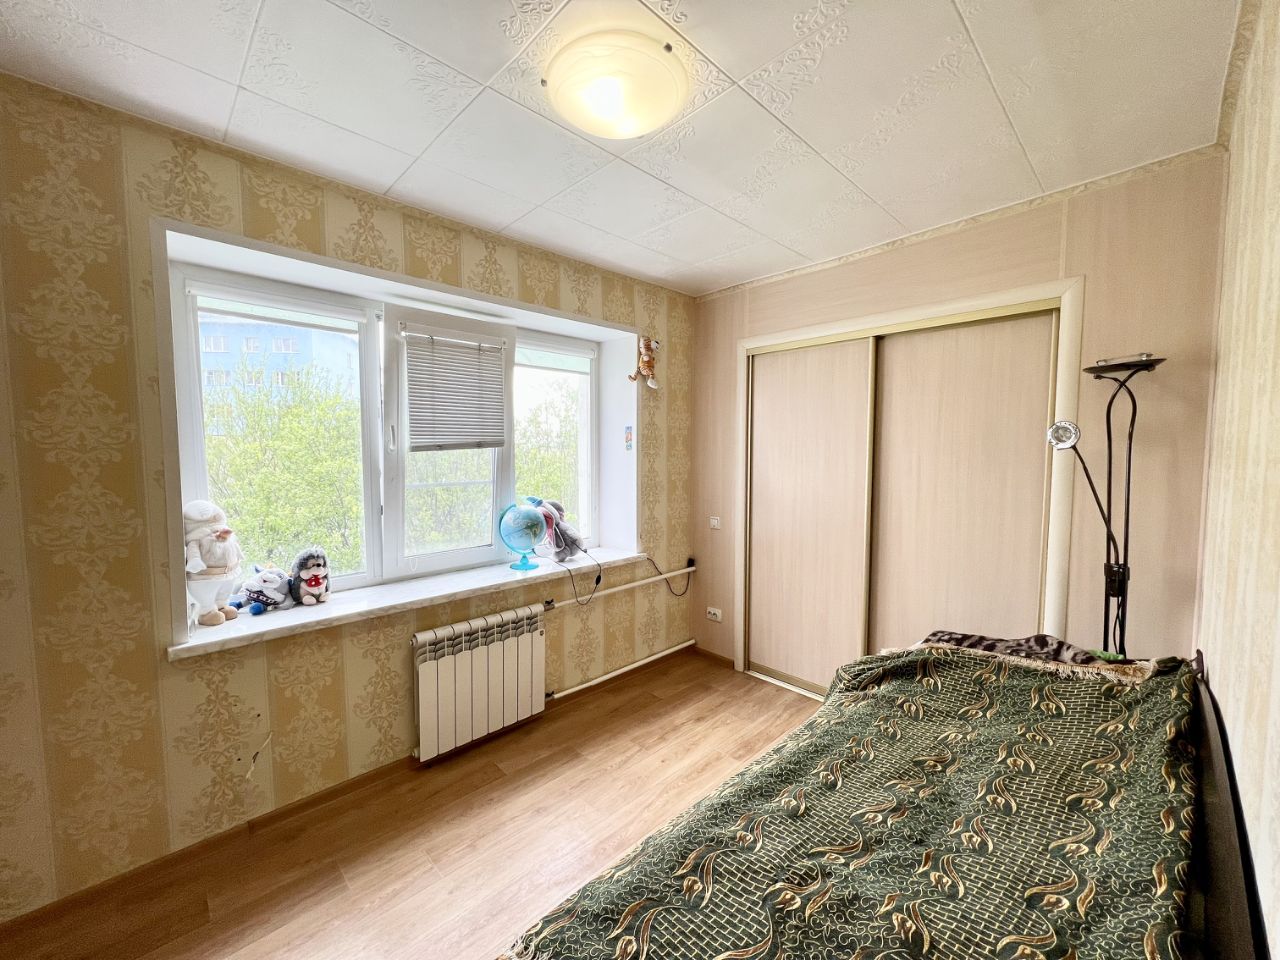 Мурманск купить квартиру 1 комнатную первомайский. 5 Комнатная квартира. Павлика Морозова 50. Павлика Морозова 110. Павлик квартира.